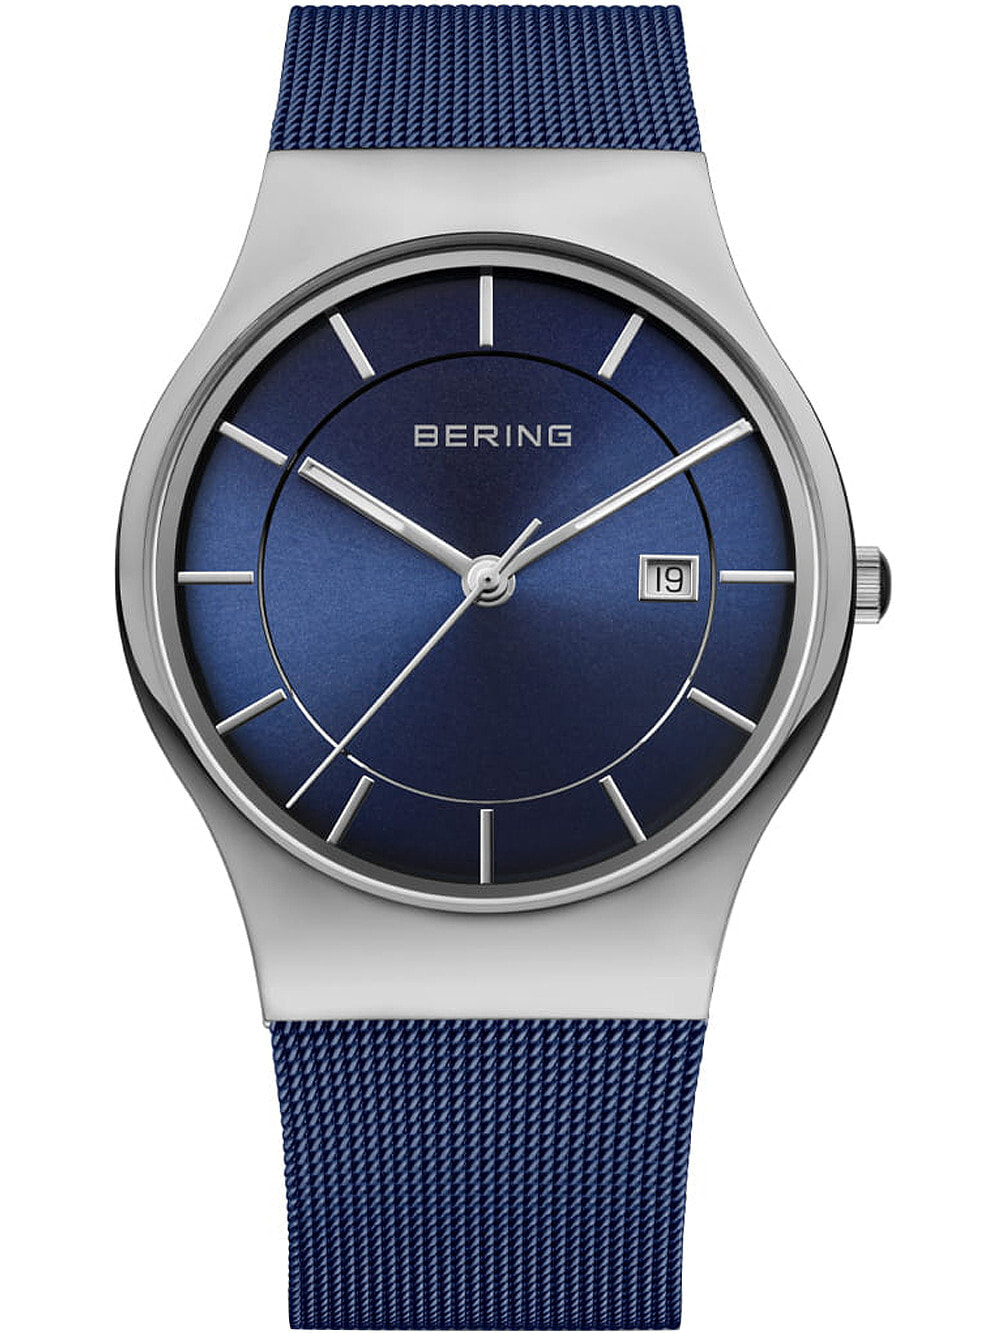 Мужские наручные часы с синим браслетом Bering 11938-303 Classic mens 38mm 3ATM